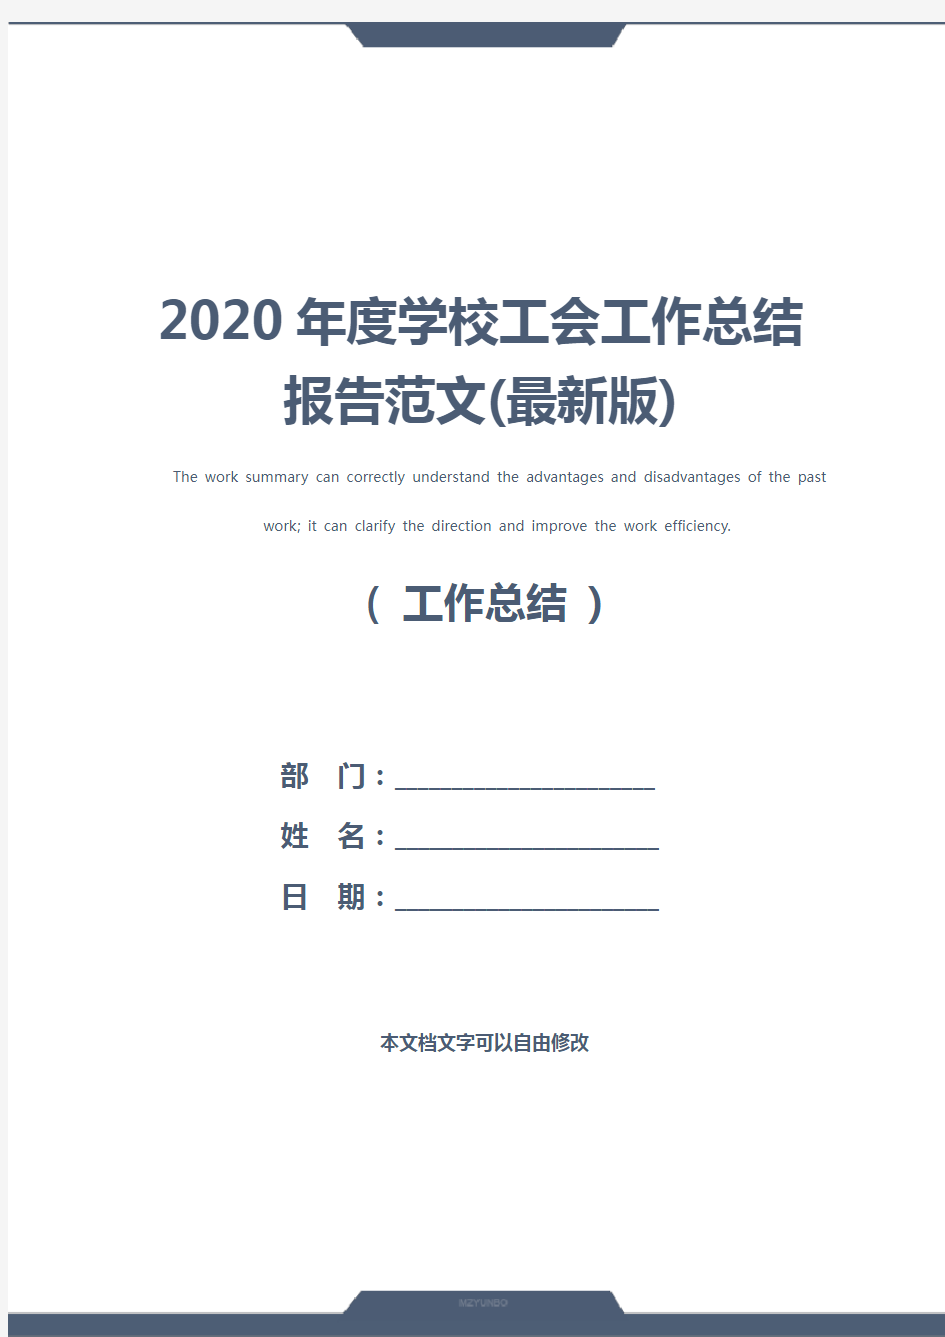 2020年度学校工会工作总结报告范文(最新版)